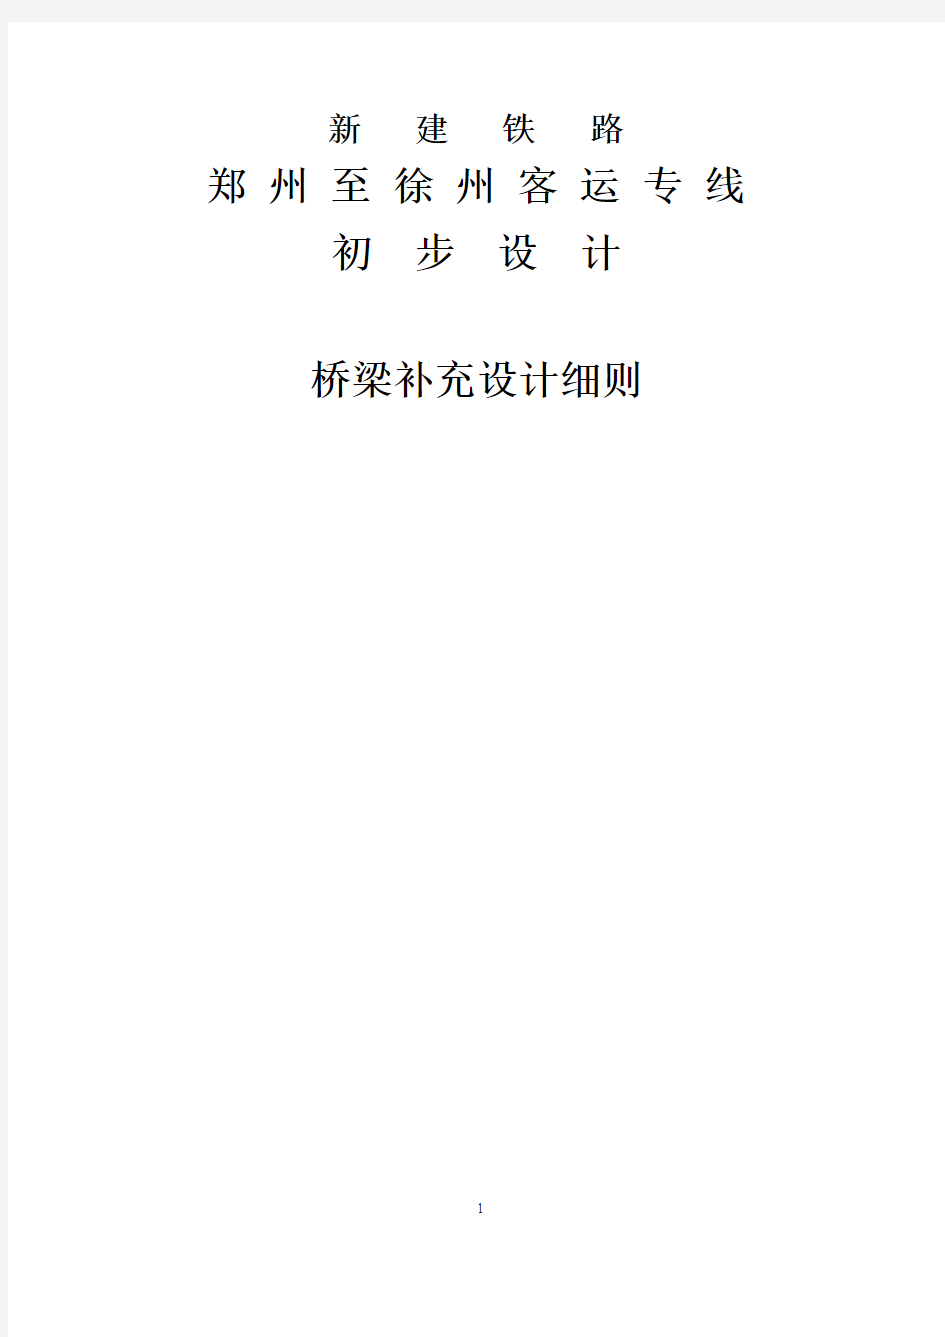 郑徐客专初步设计补充细则(送审2010.3.16)